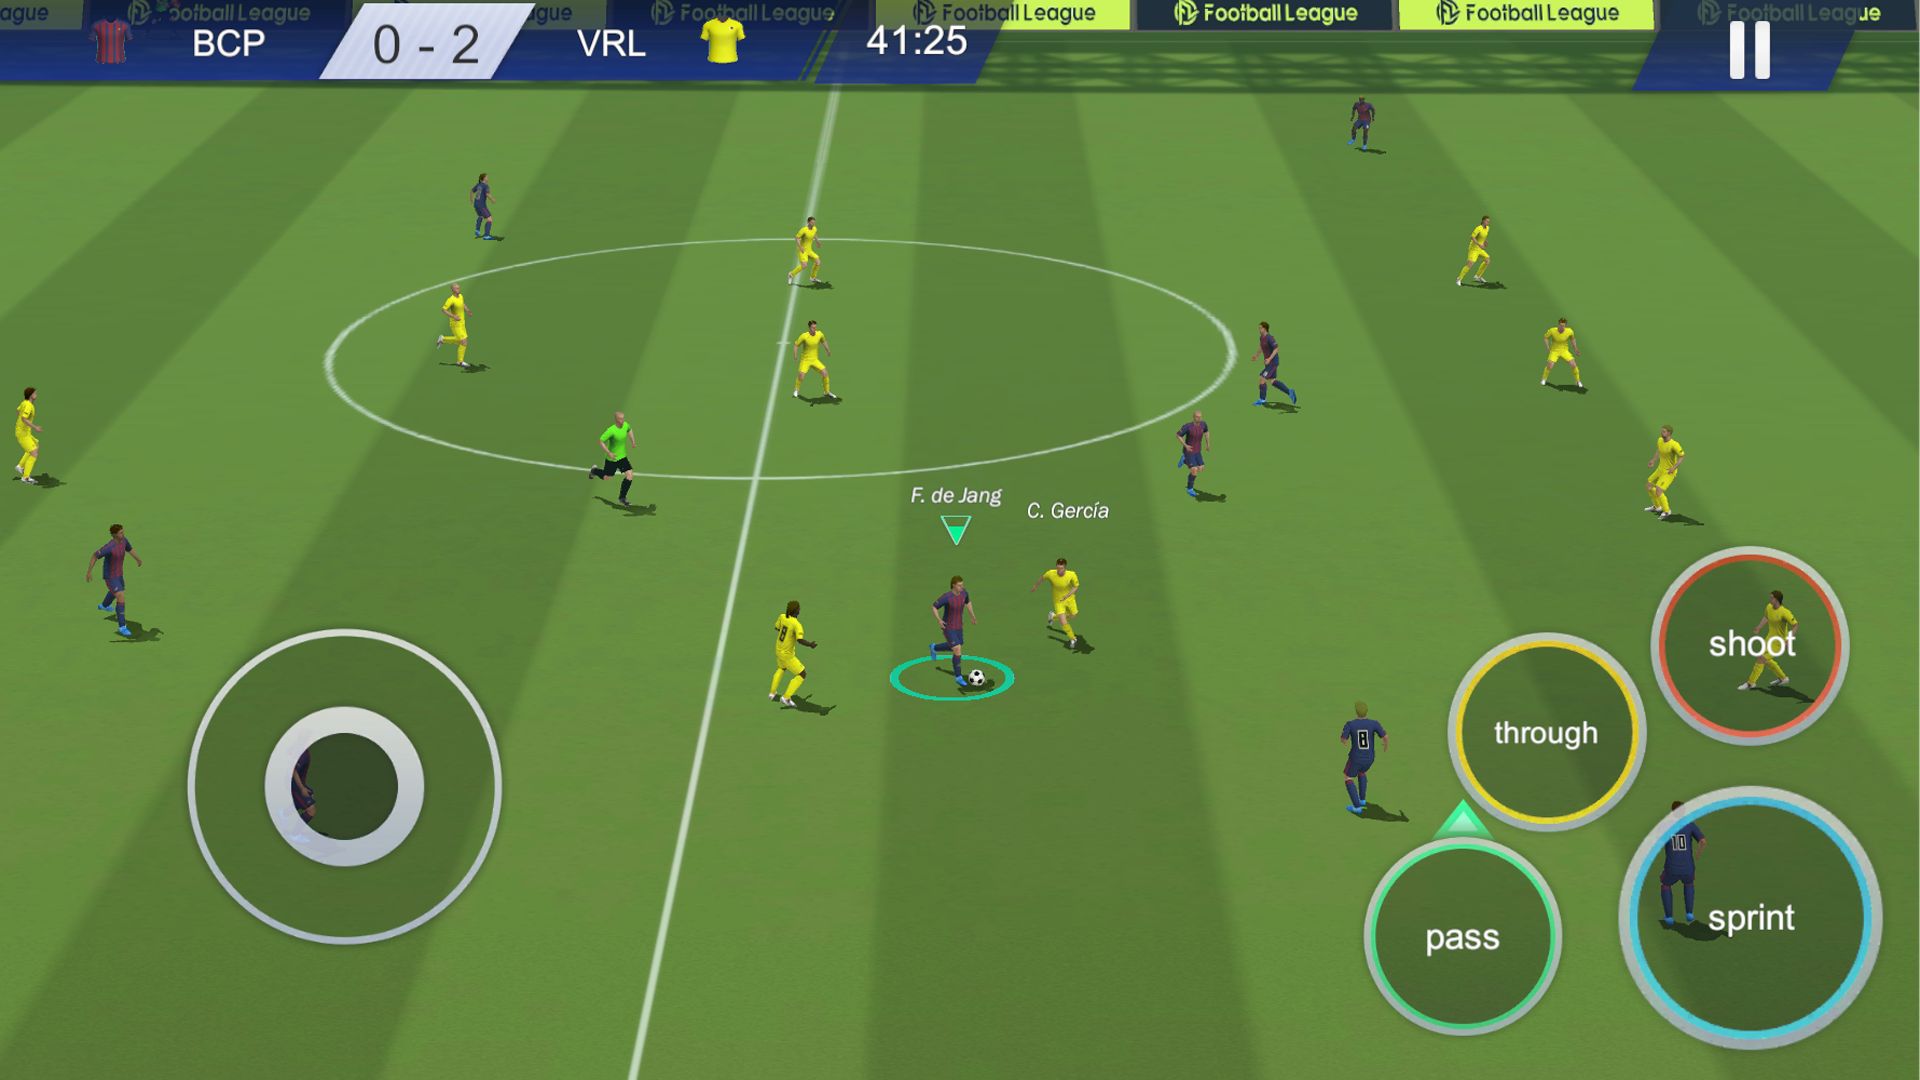 Liga Toon - Jogo de Futebol 2.7.11 para Android - APK Download gratuito e  revisões de aplicativos